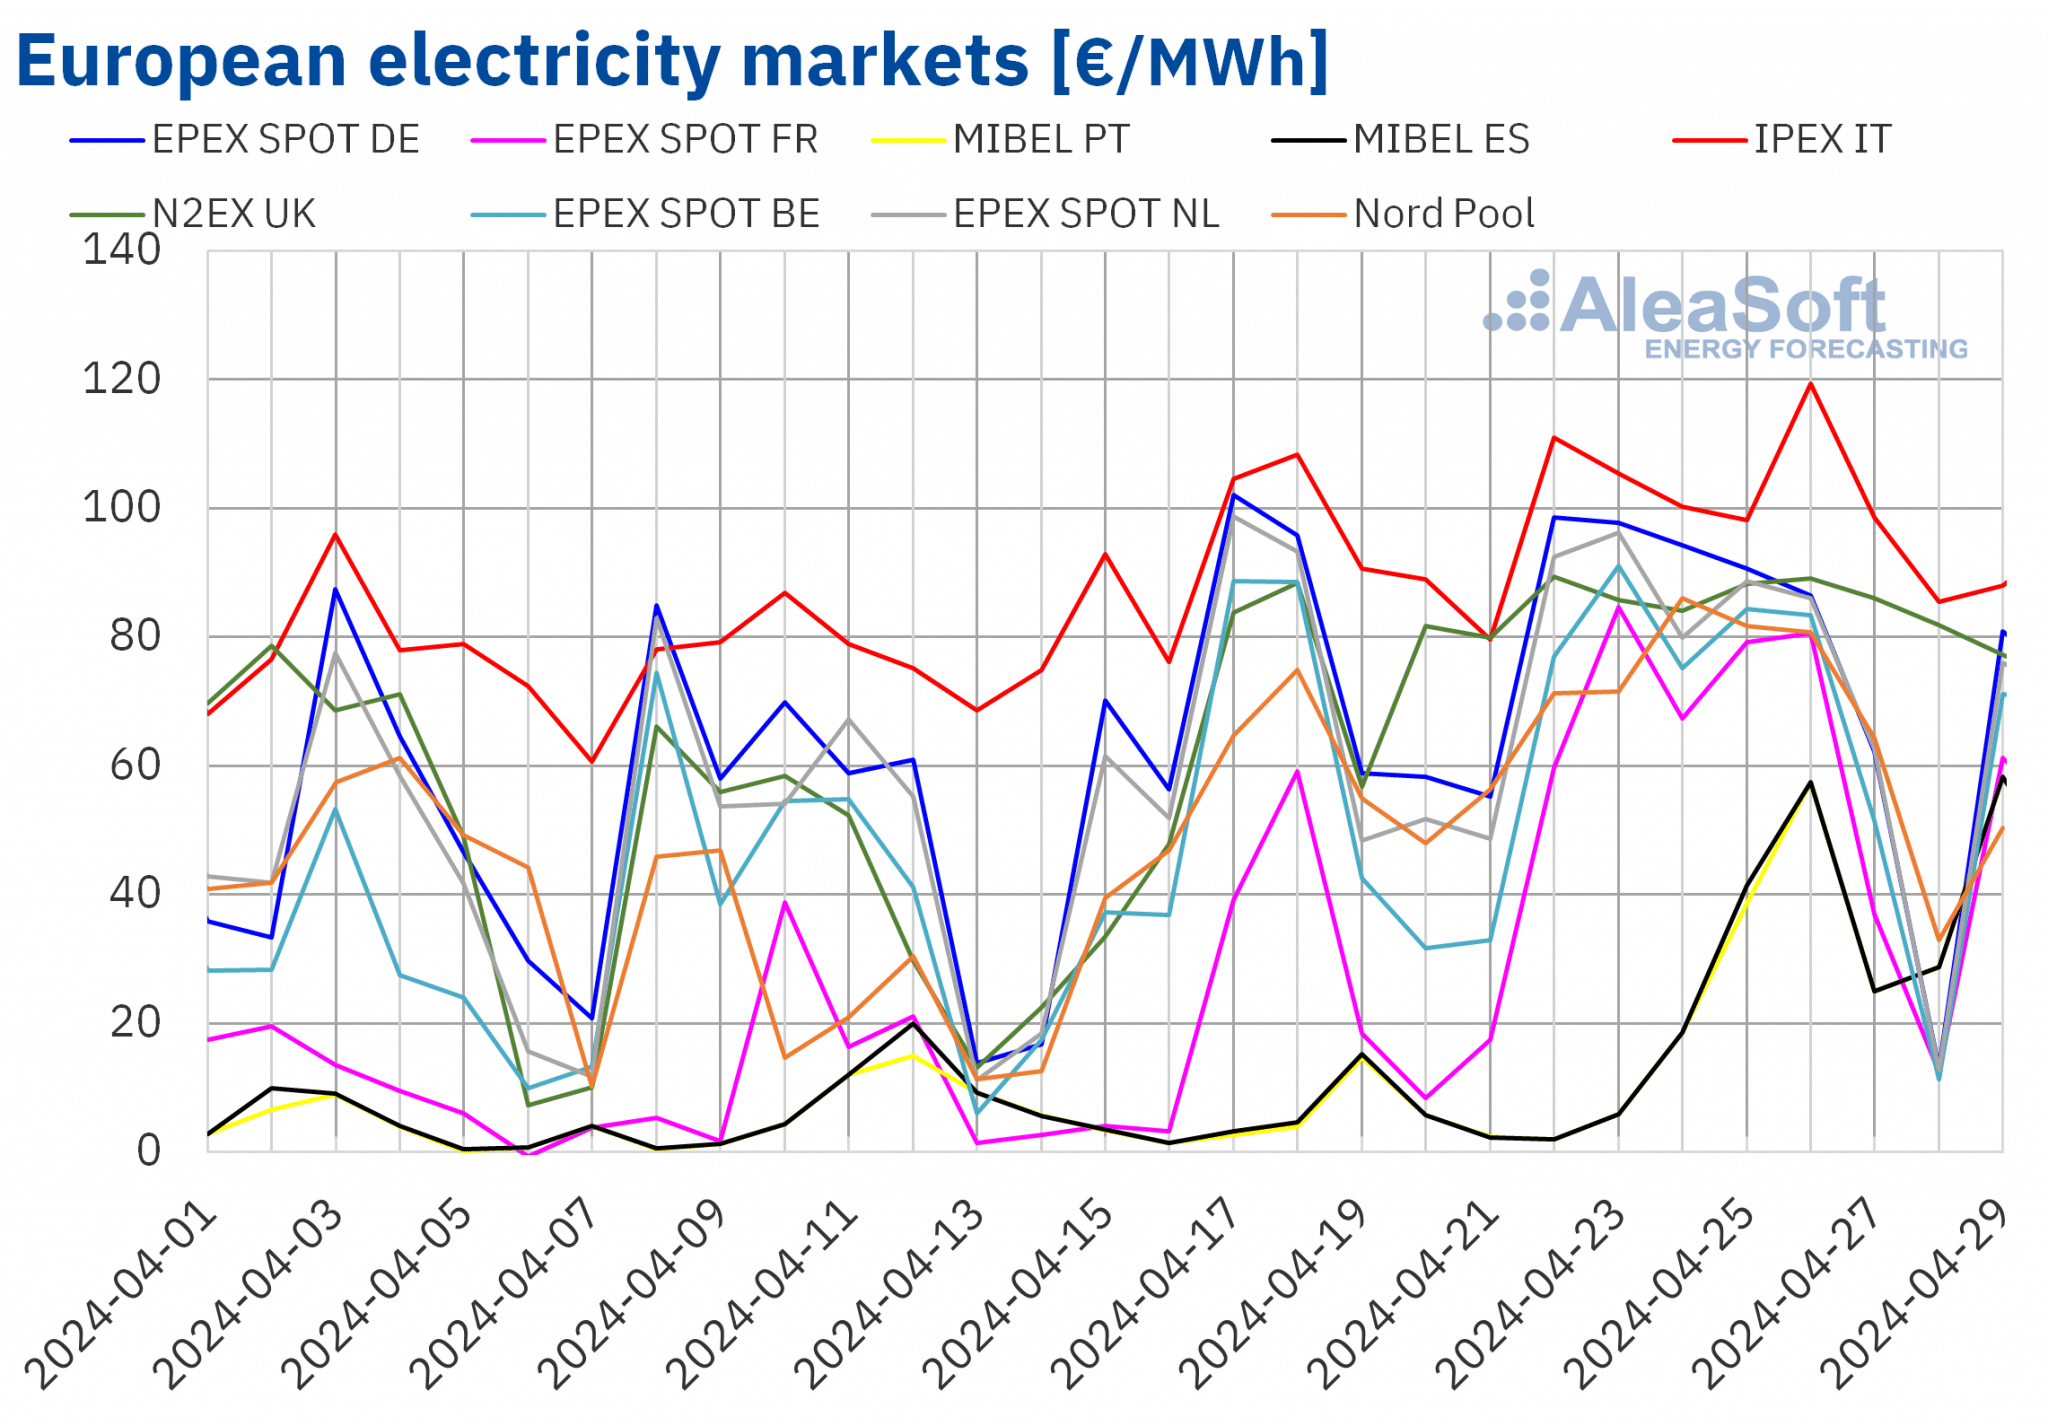 prezzi elettrici nei mercati europei 